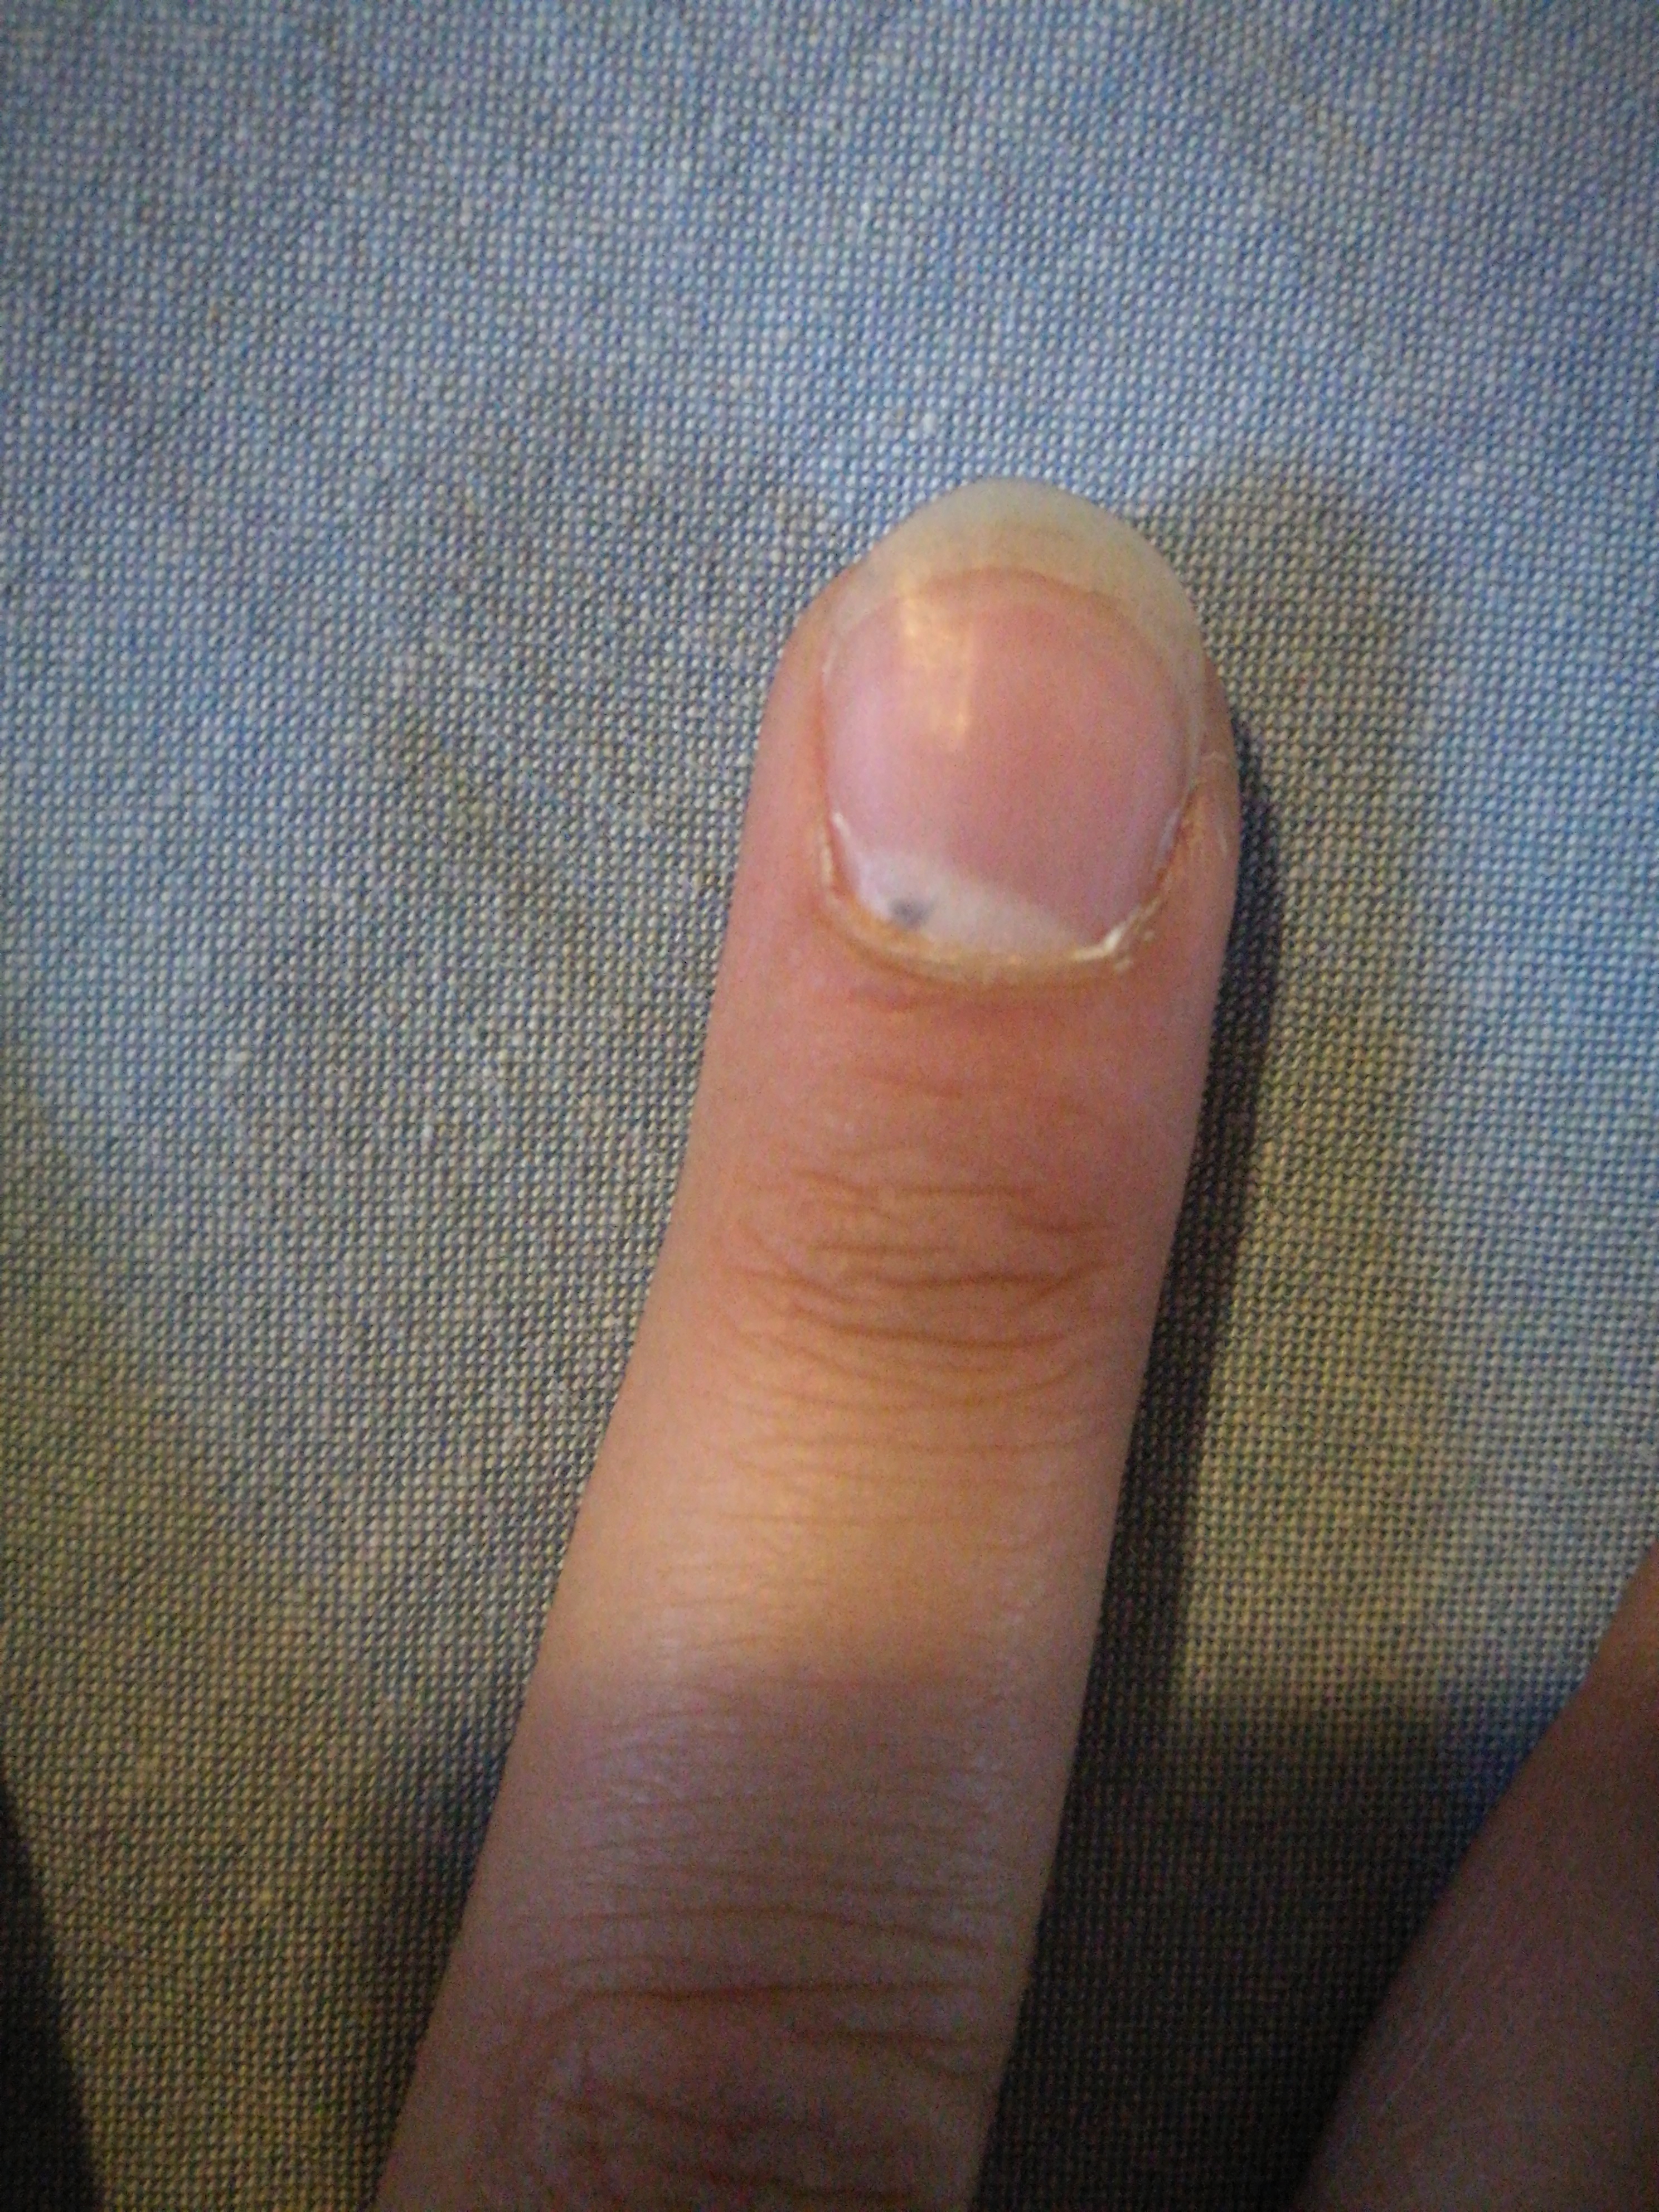 Schwarzer Fleck unter meinem Nagel was könnte das sein? (Gesundheit